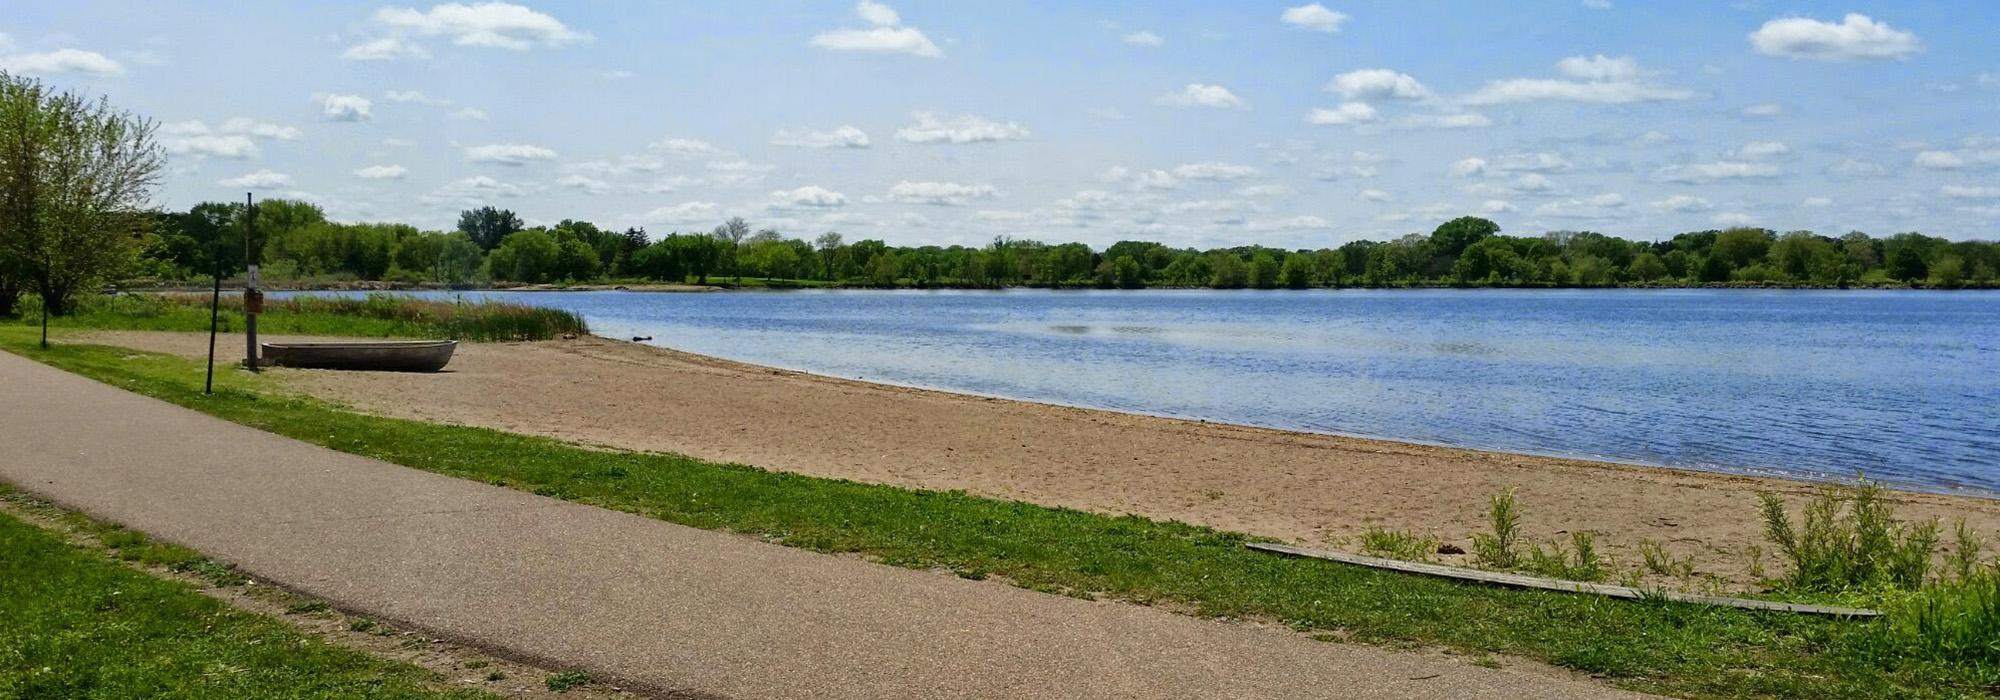 Lake Hiawatha Park, Minneapolis, MN